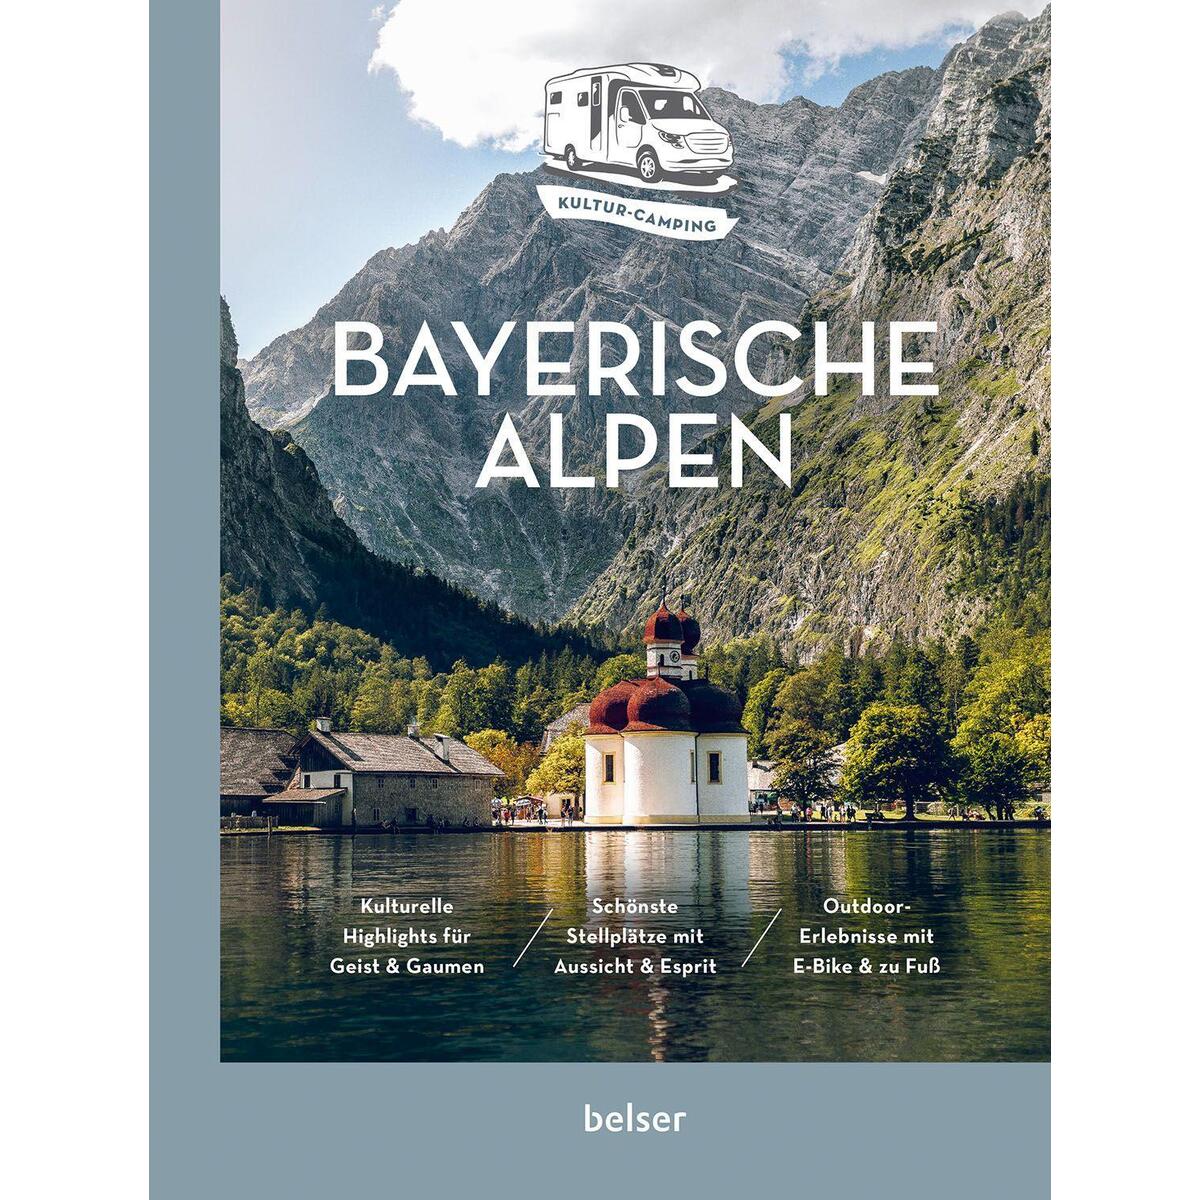 Kultur-Camping mit dem Wohnmobil. Bayerische Alpen von Belser Reise